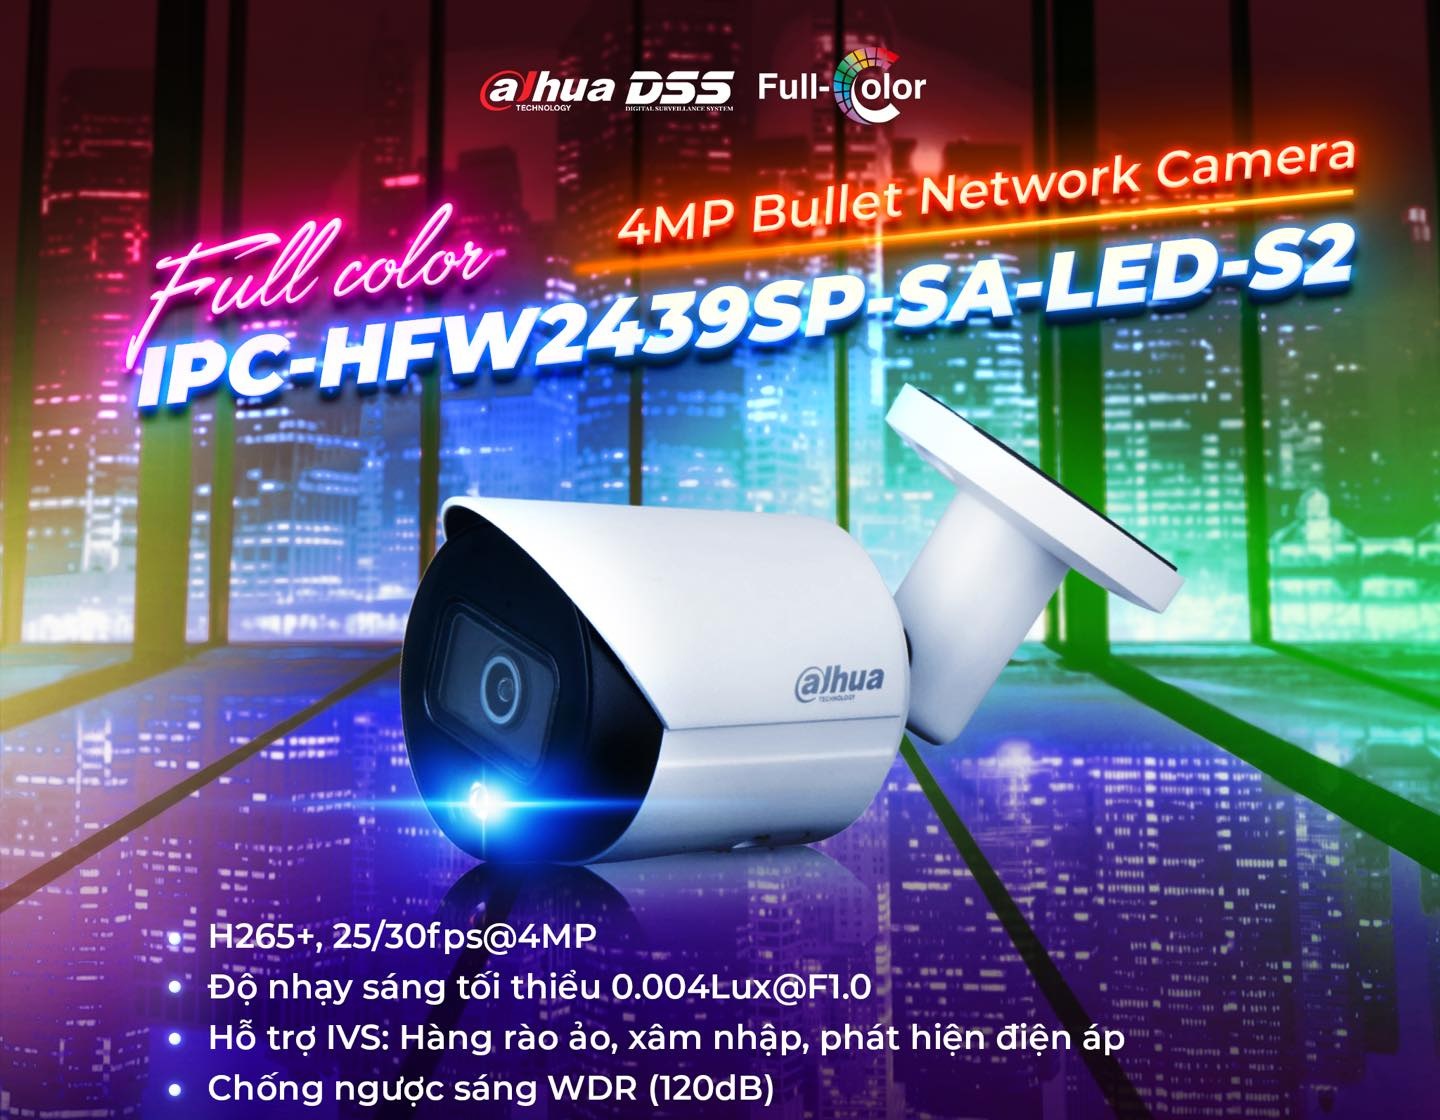 DH-IPC-HFW2439SP-SA-LED-S2